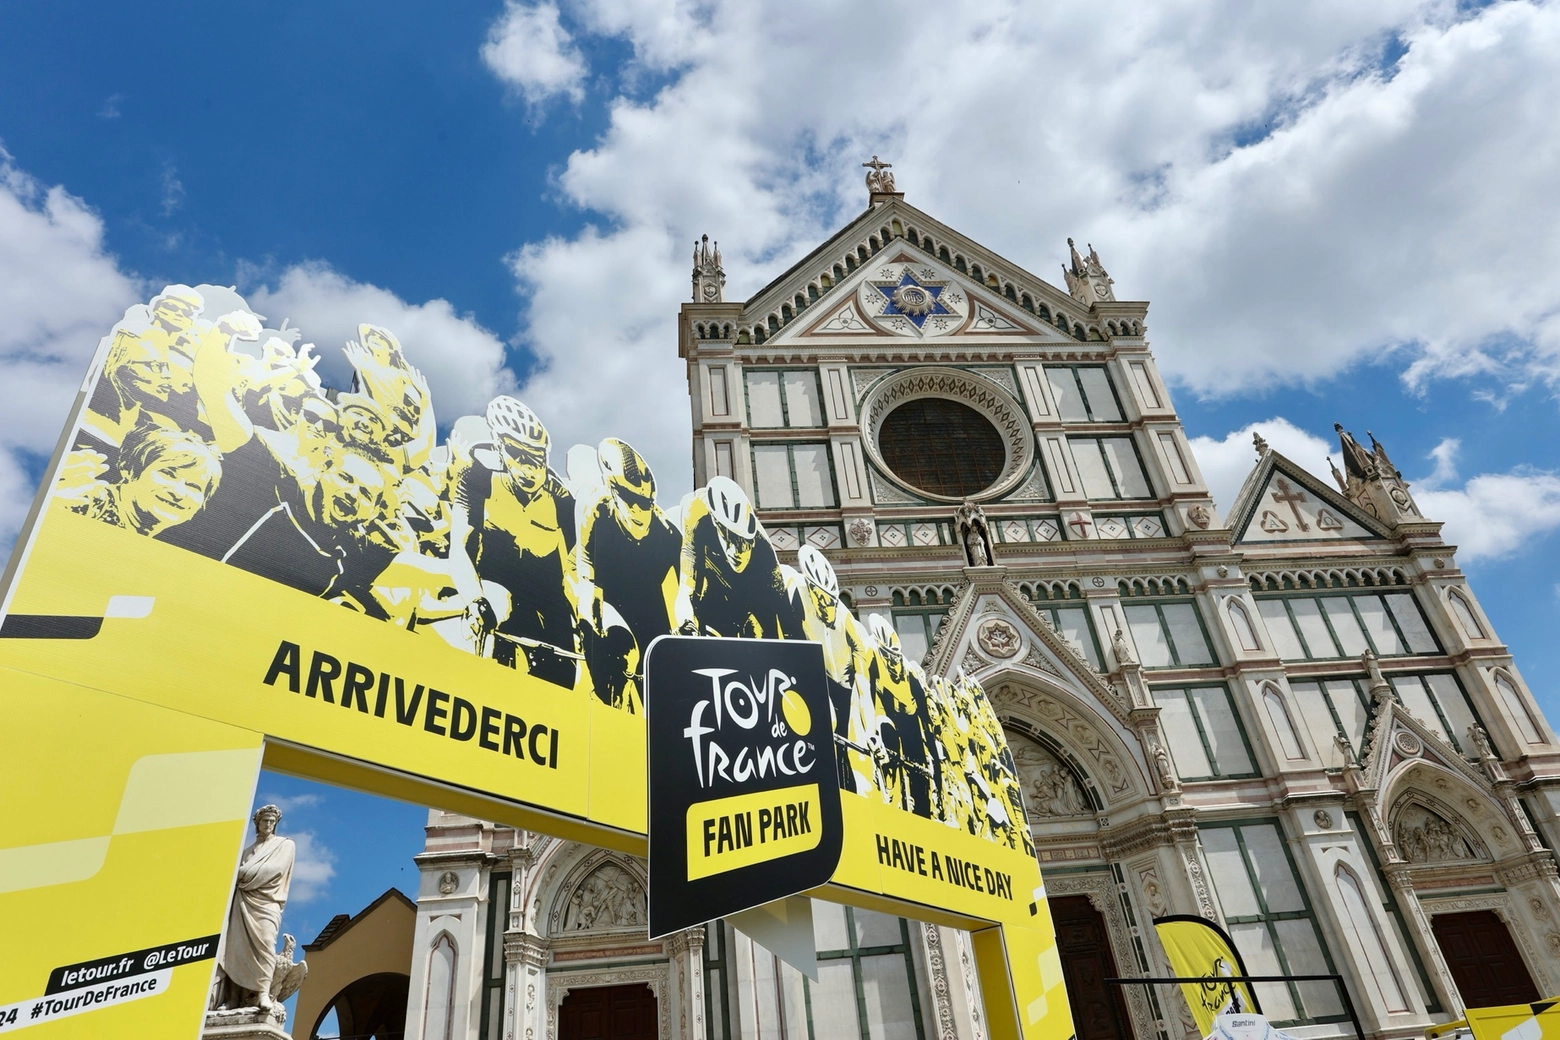 Il Tour de France parte da Firenze: un grande momento sportivo per la Toscana e l'Italia. In questa immagine, il villaggio dei tifosi in piazza Santa Croce